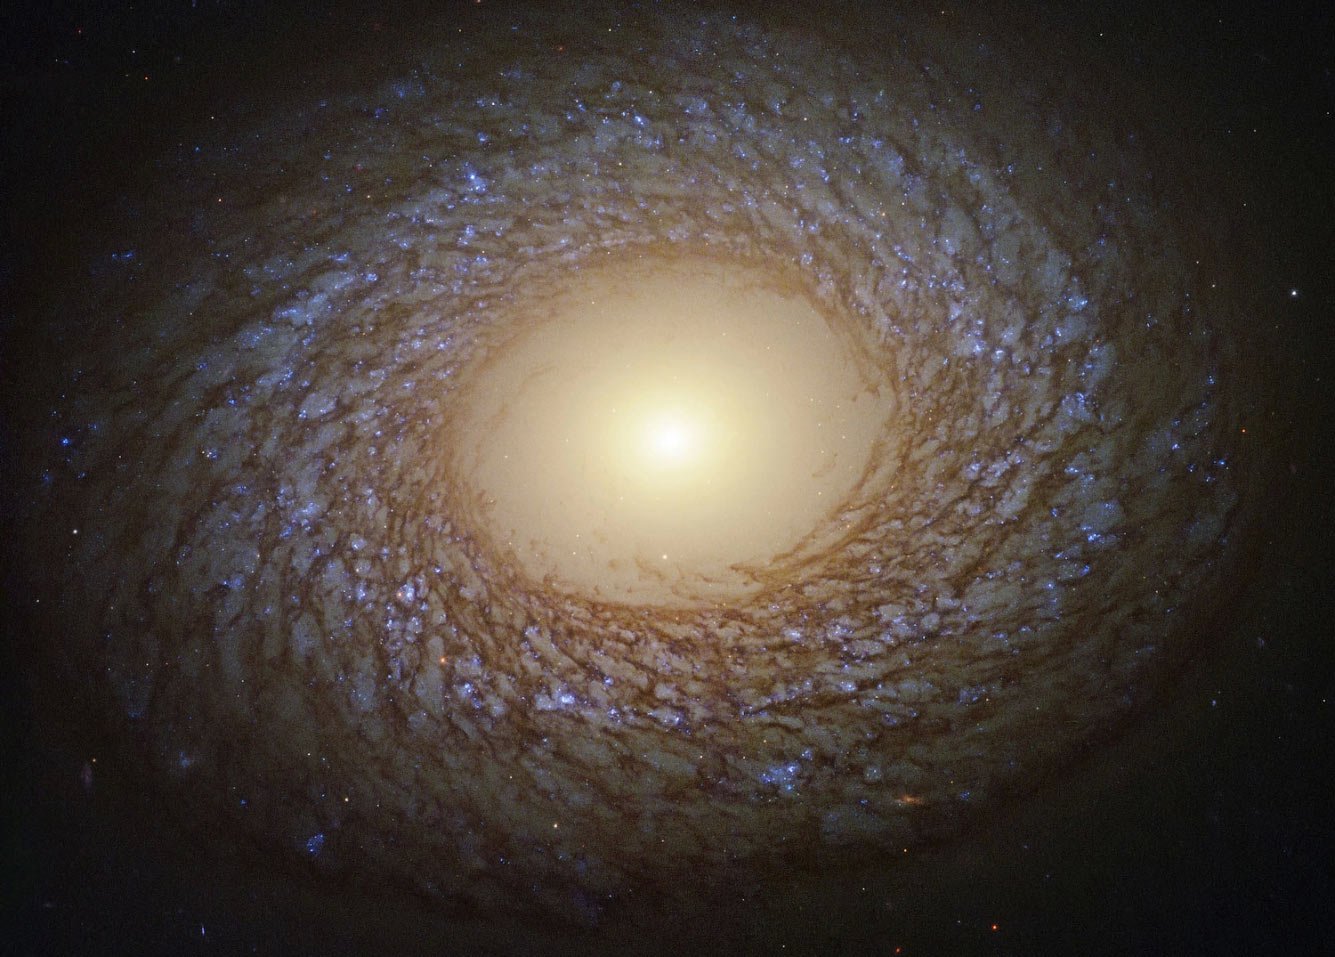 Галактика NGC 2775